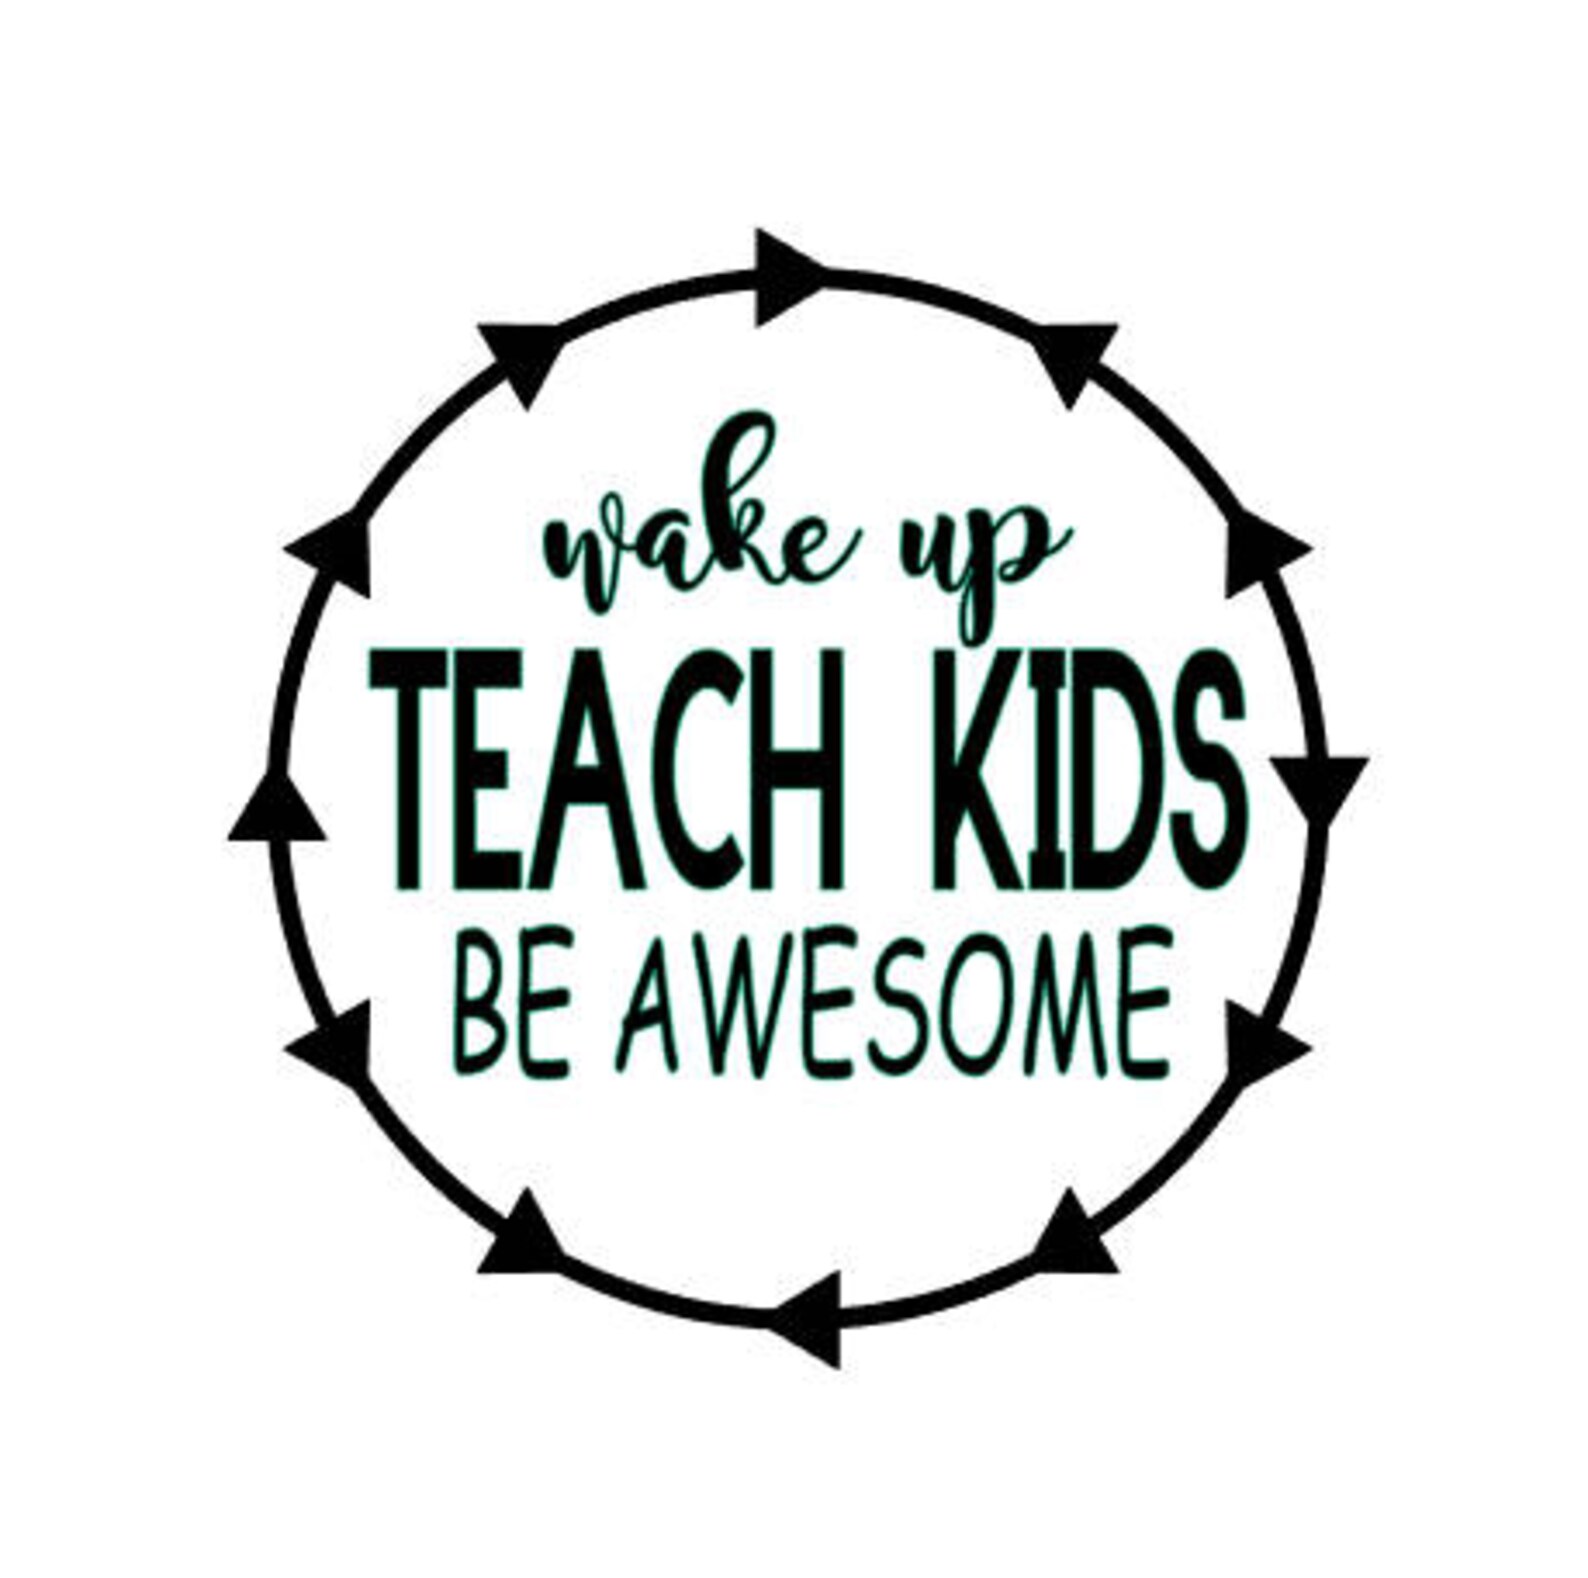 Teacher Gift Teacher Decal Awesome Decal Teach Kids | Etsy